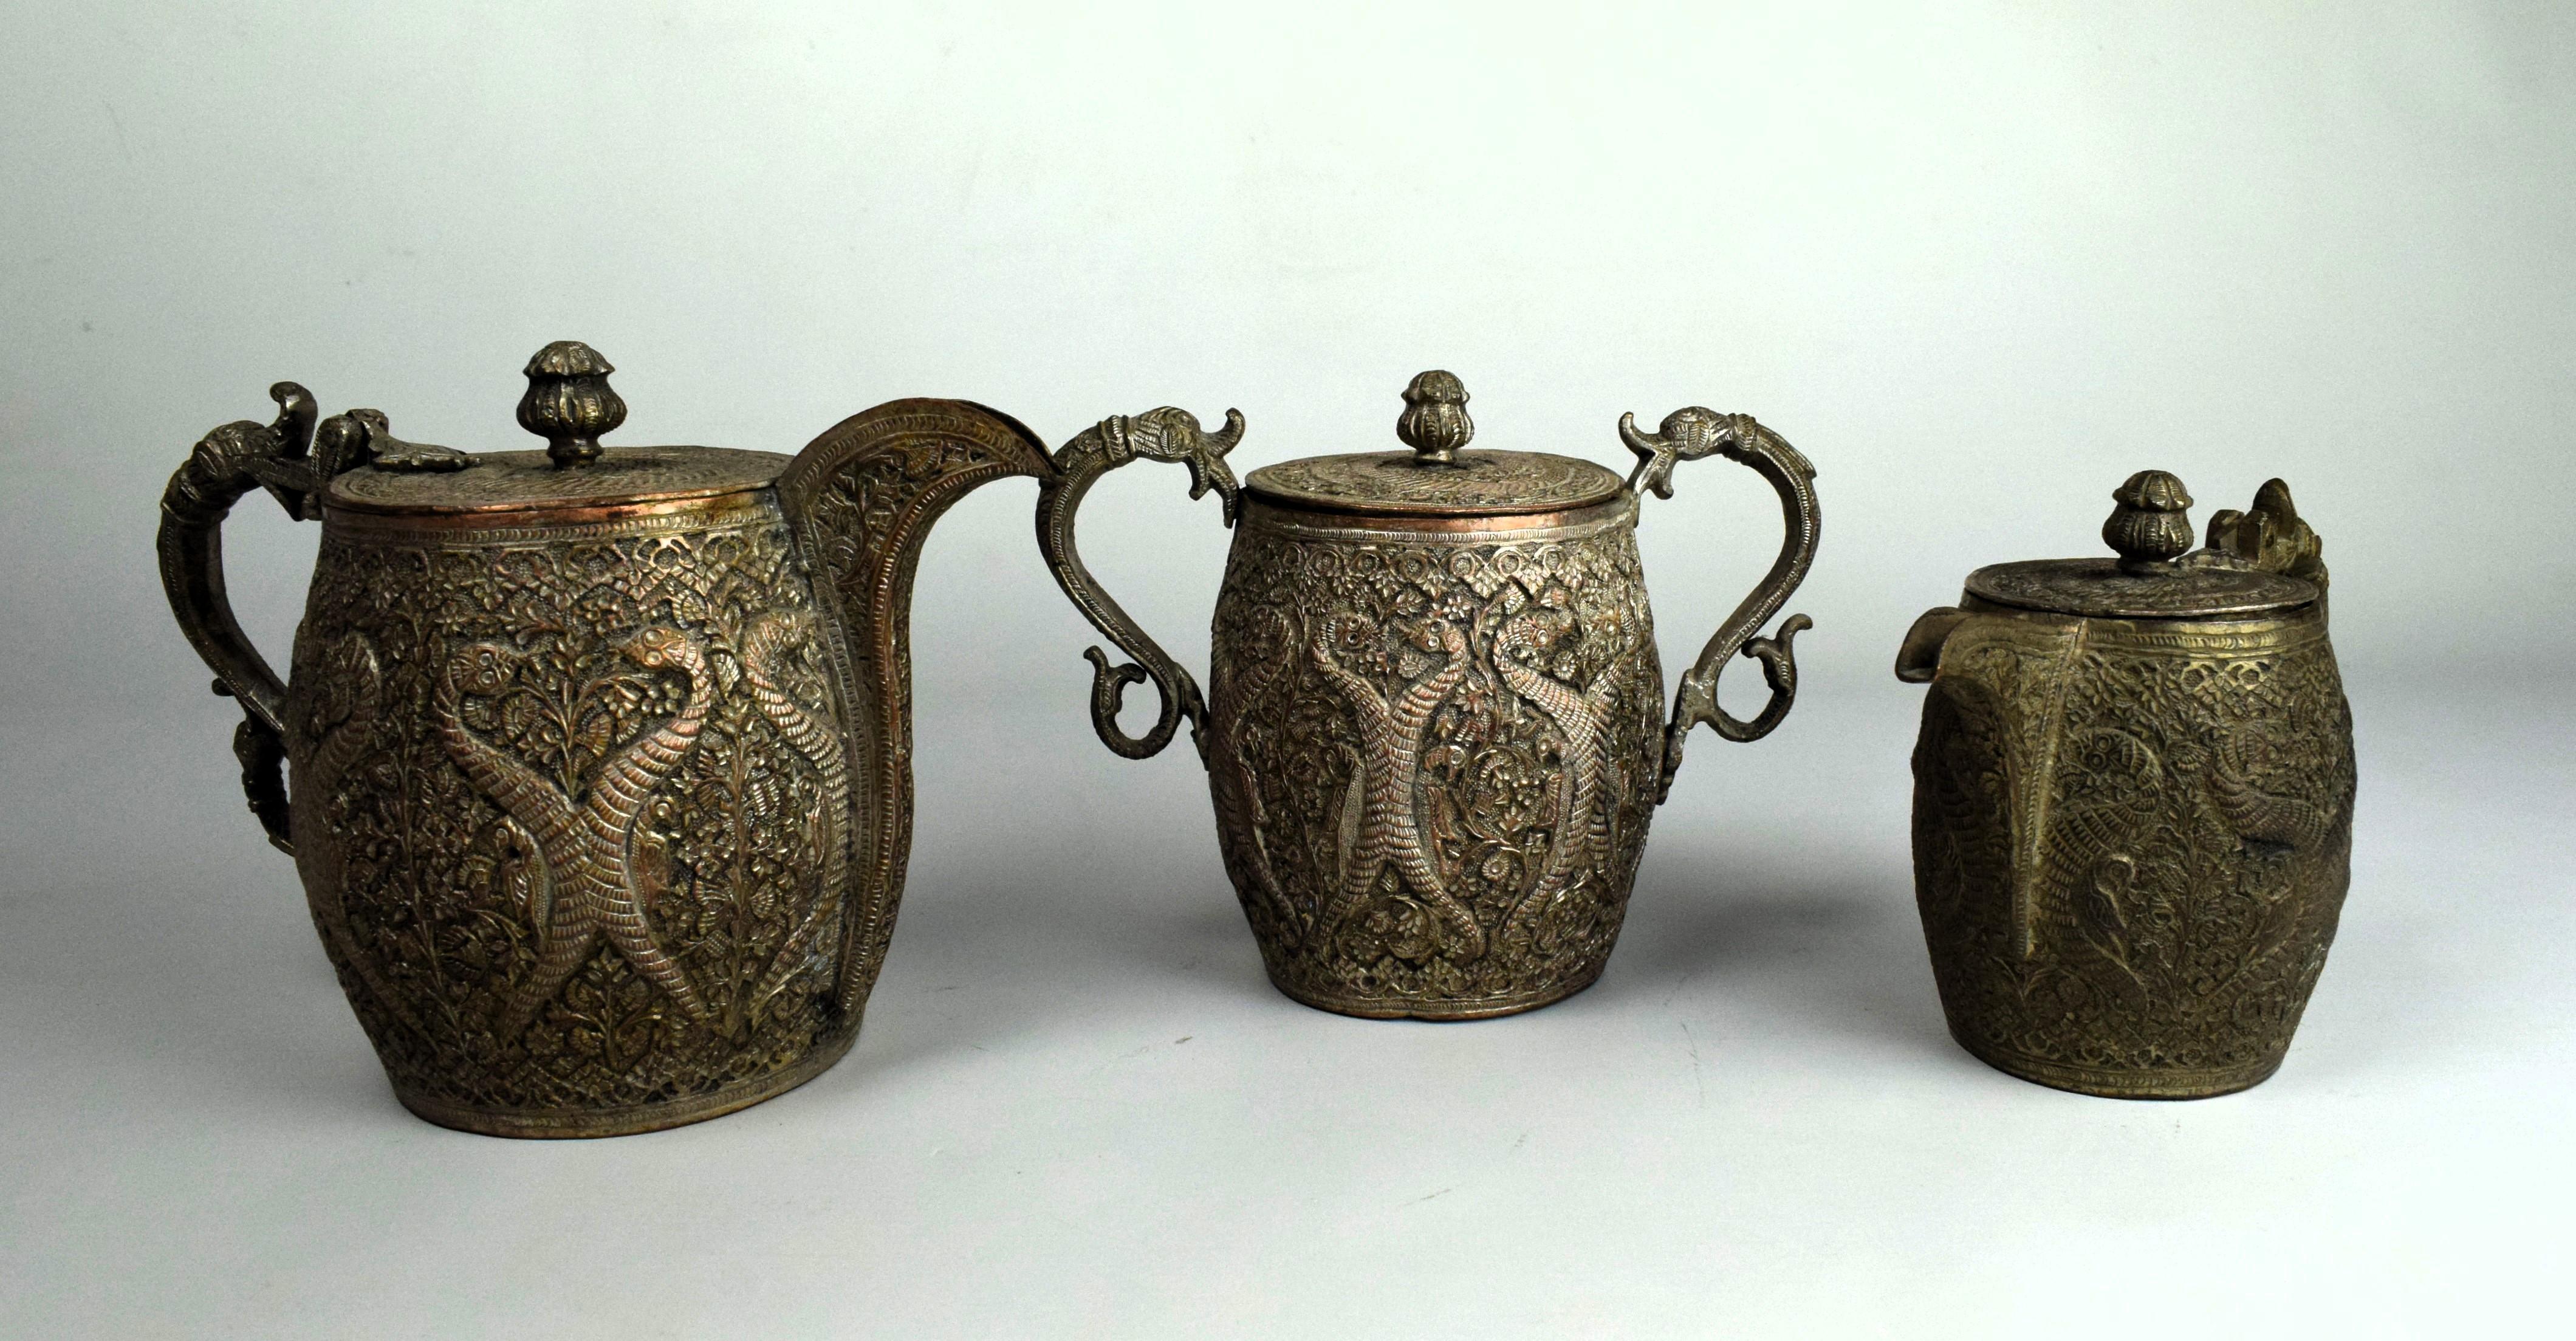 Dieses kupferne Teeservice aus Kaschmir aus dem 19. Jahrhundert, bestehend aus einer Untertasse, einer Zuckerkanne und einer Milchkanne, ist eine großartige Darstellung des reichen künstlerischen Erbes der Region und des Einflusses der